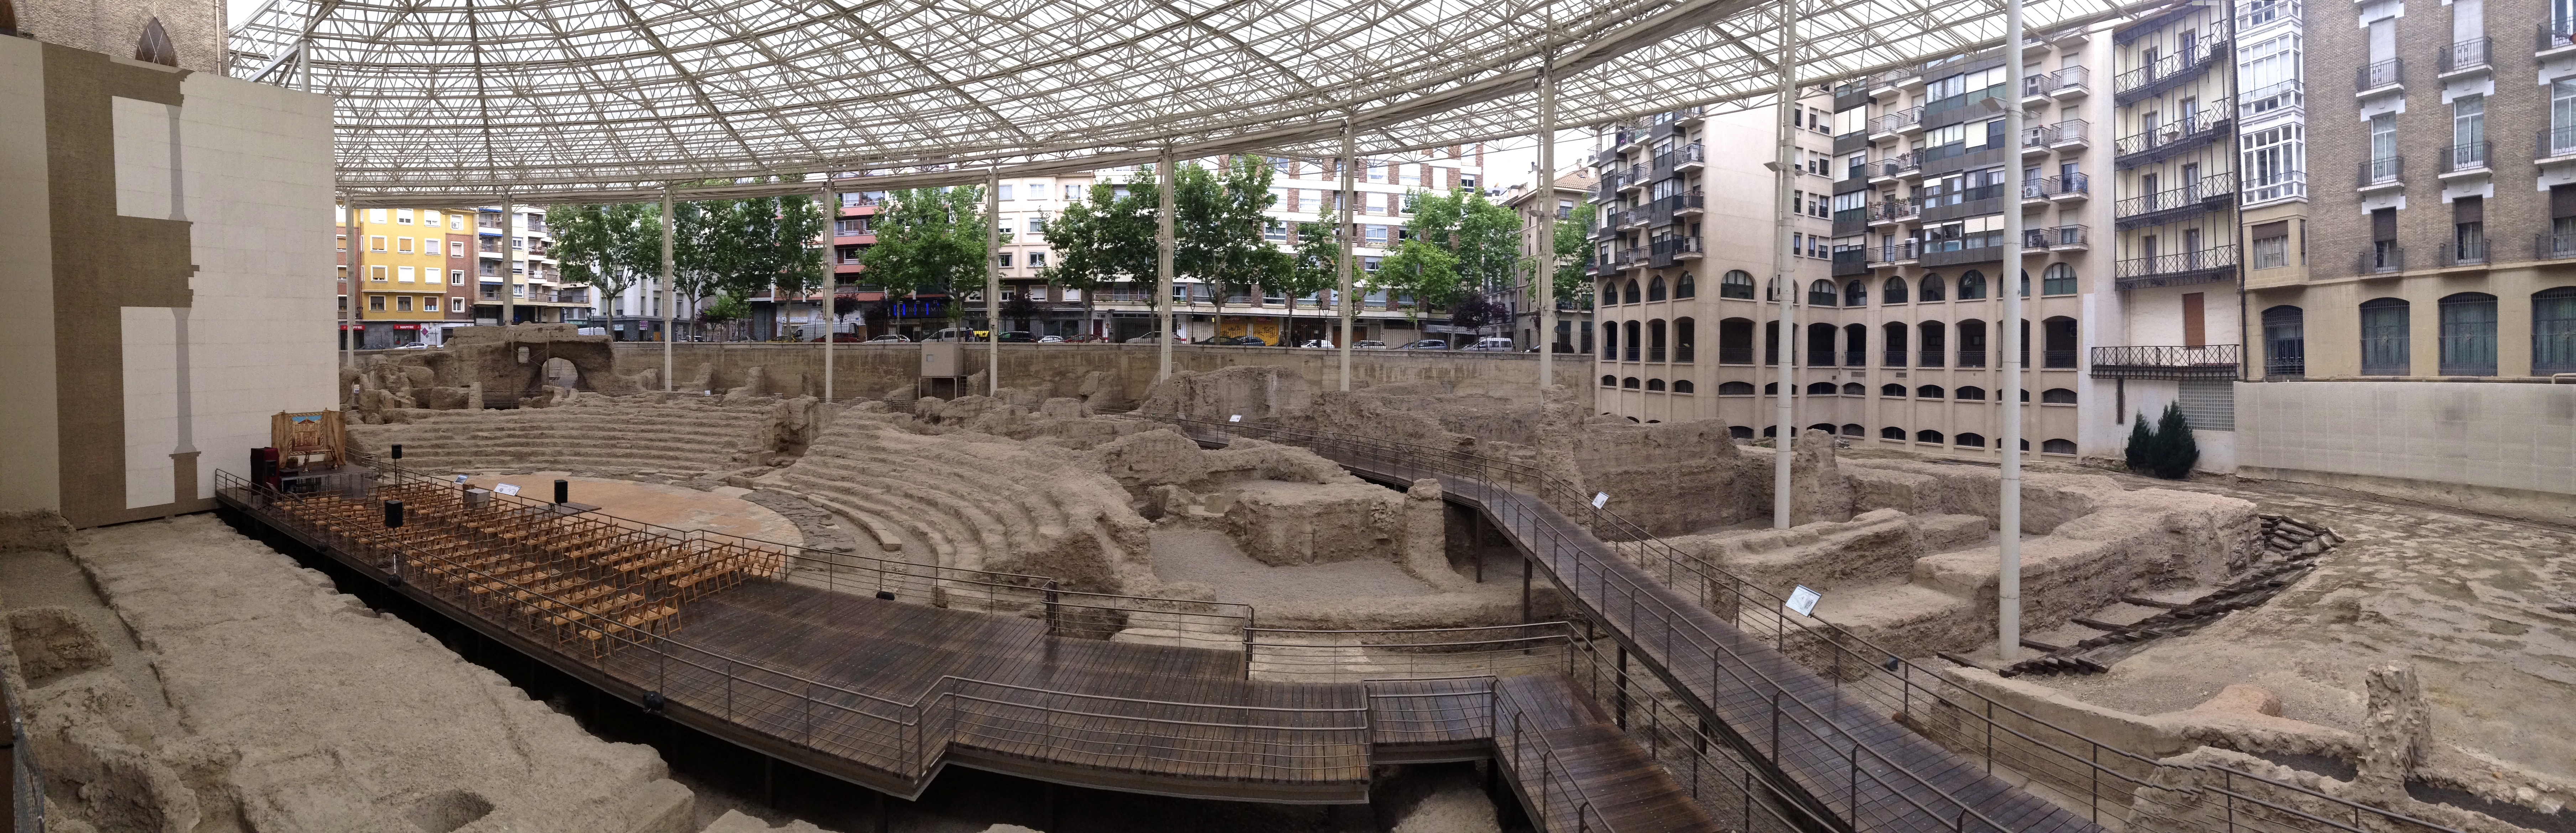 Roman amphitheater ruins